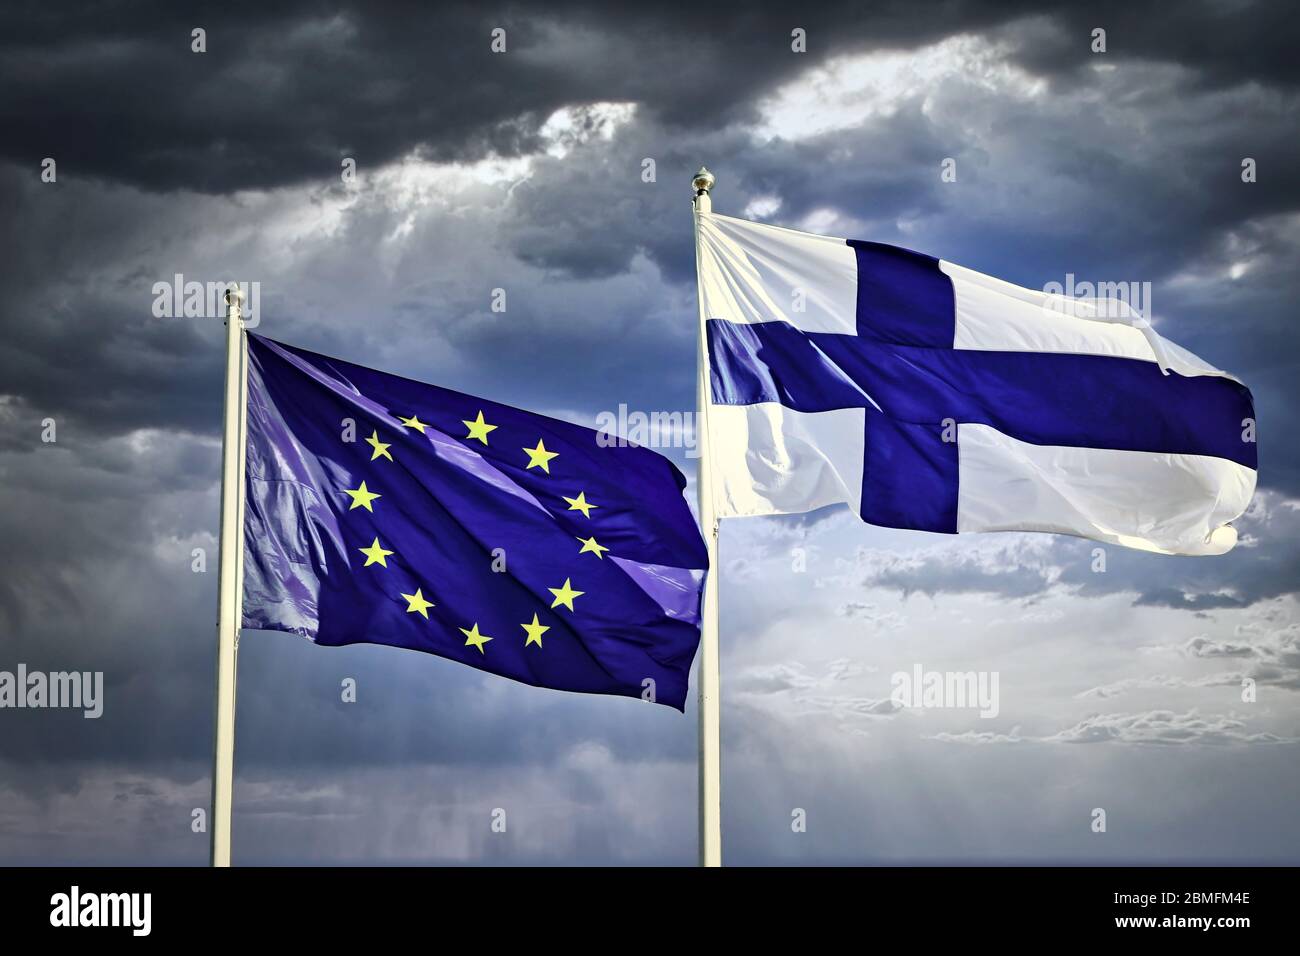 Flaggen der EU und Finnlands vor dramatischem, dunklem und bewölktem Himmel. Stockfoto